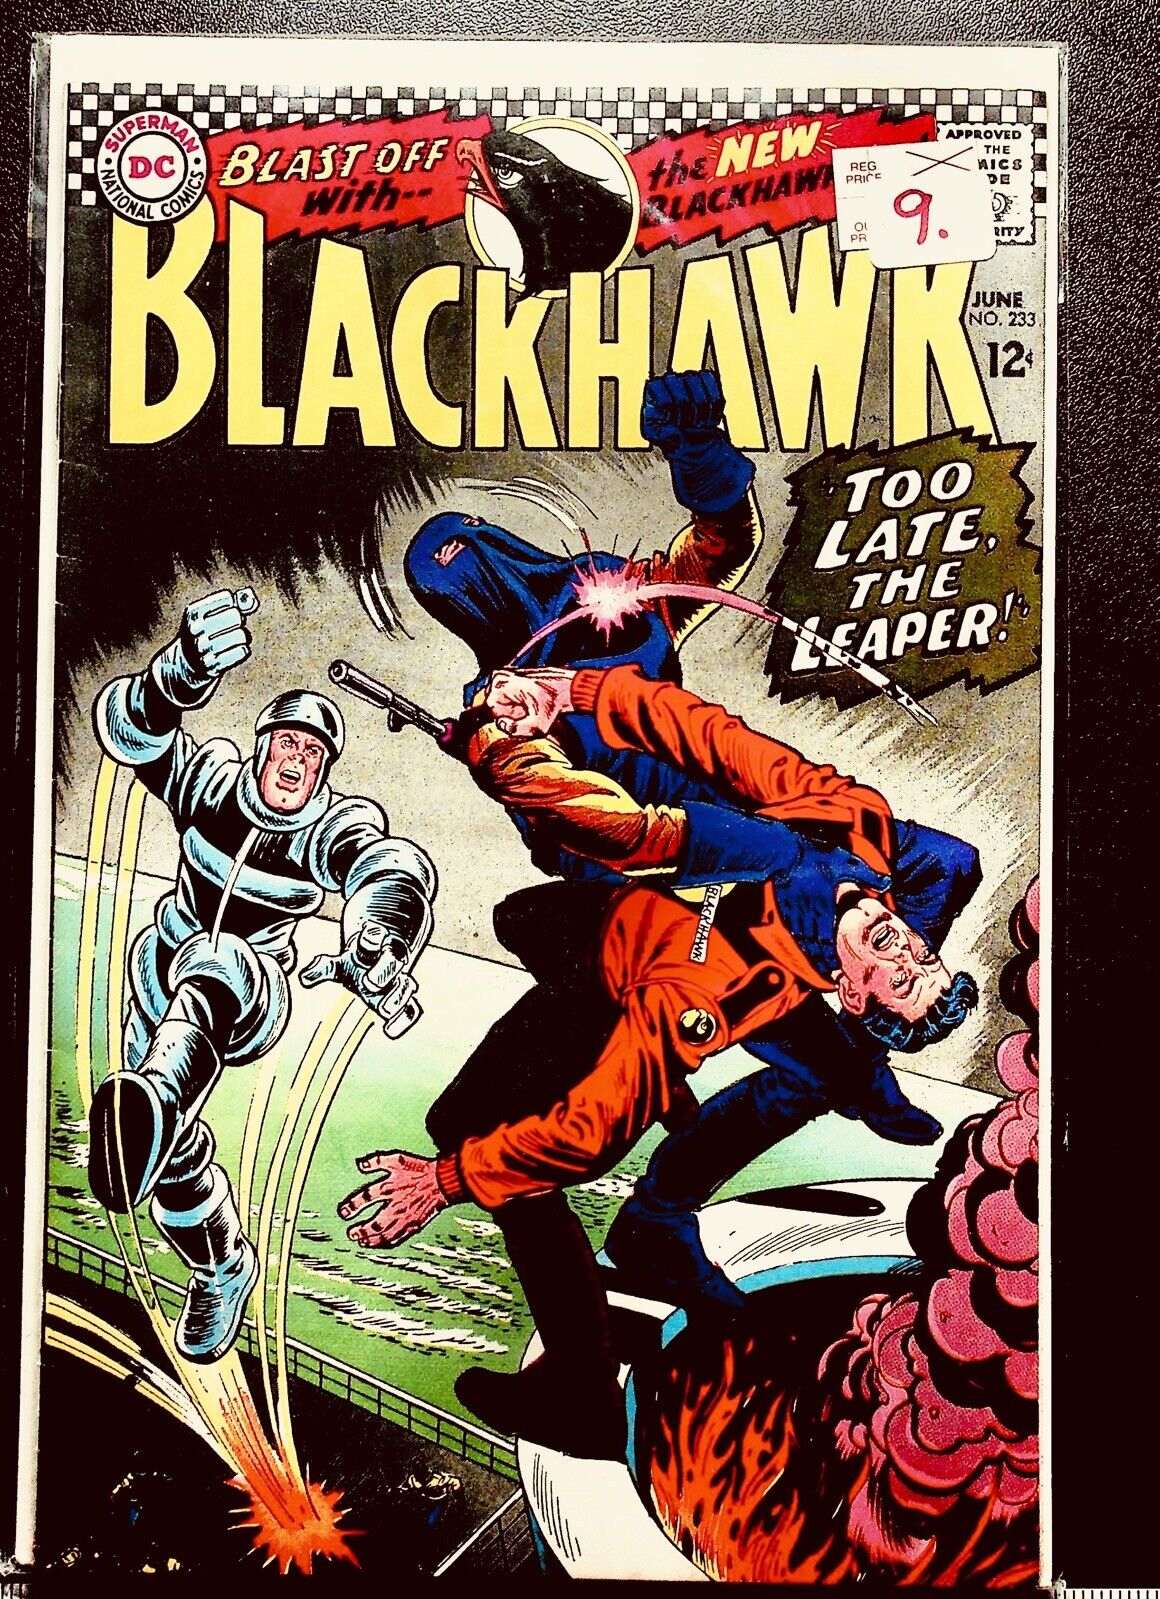 Blackhawk, DC Comics #233  1964 Too Late the Leaper